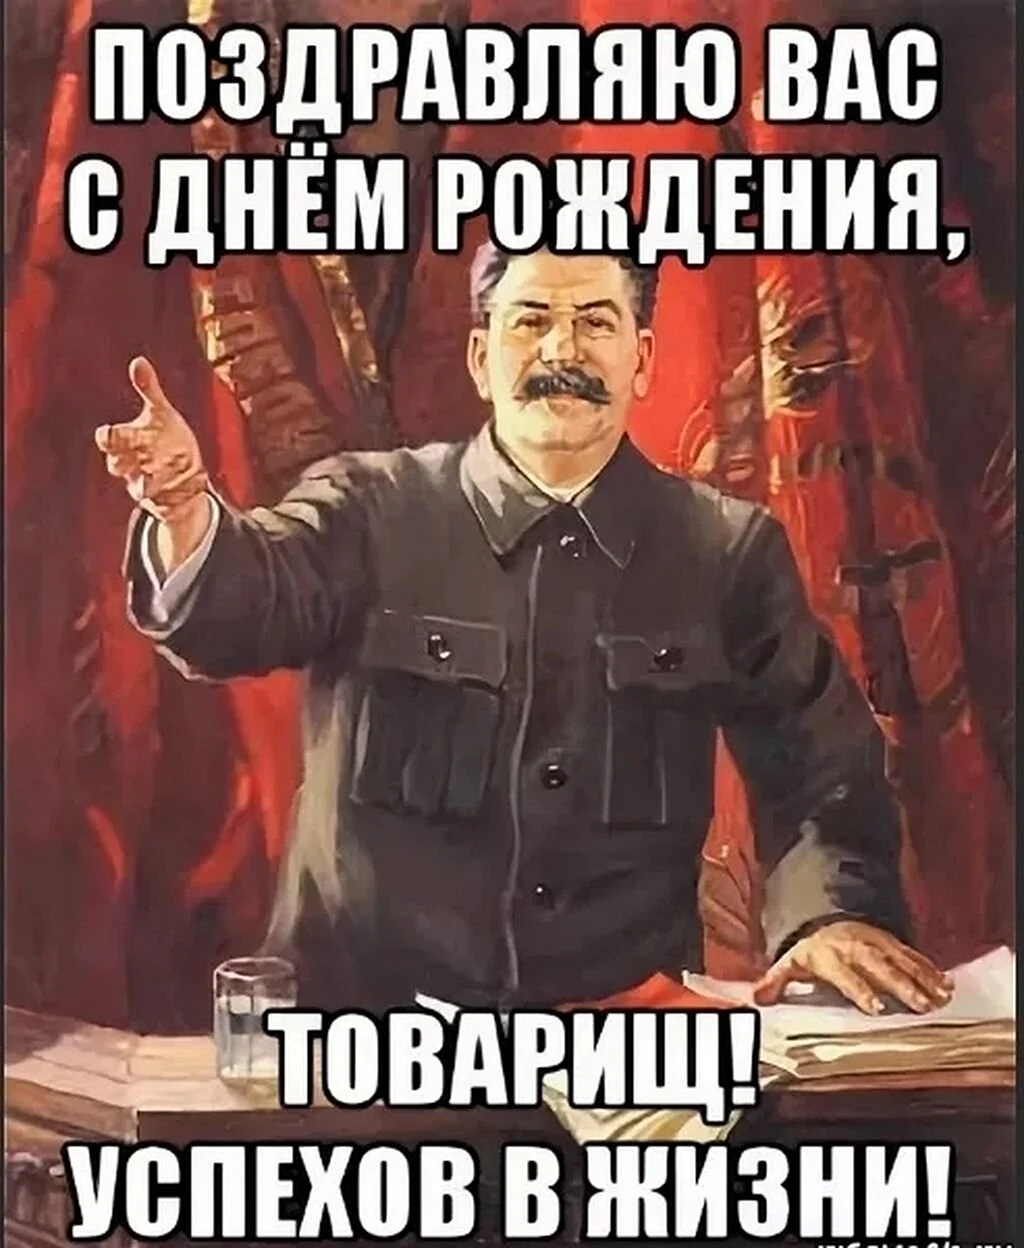 Поздравление с днём рождения от Сталина